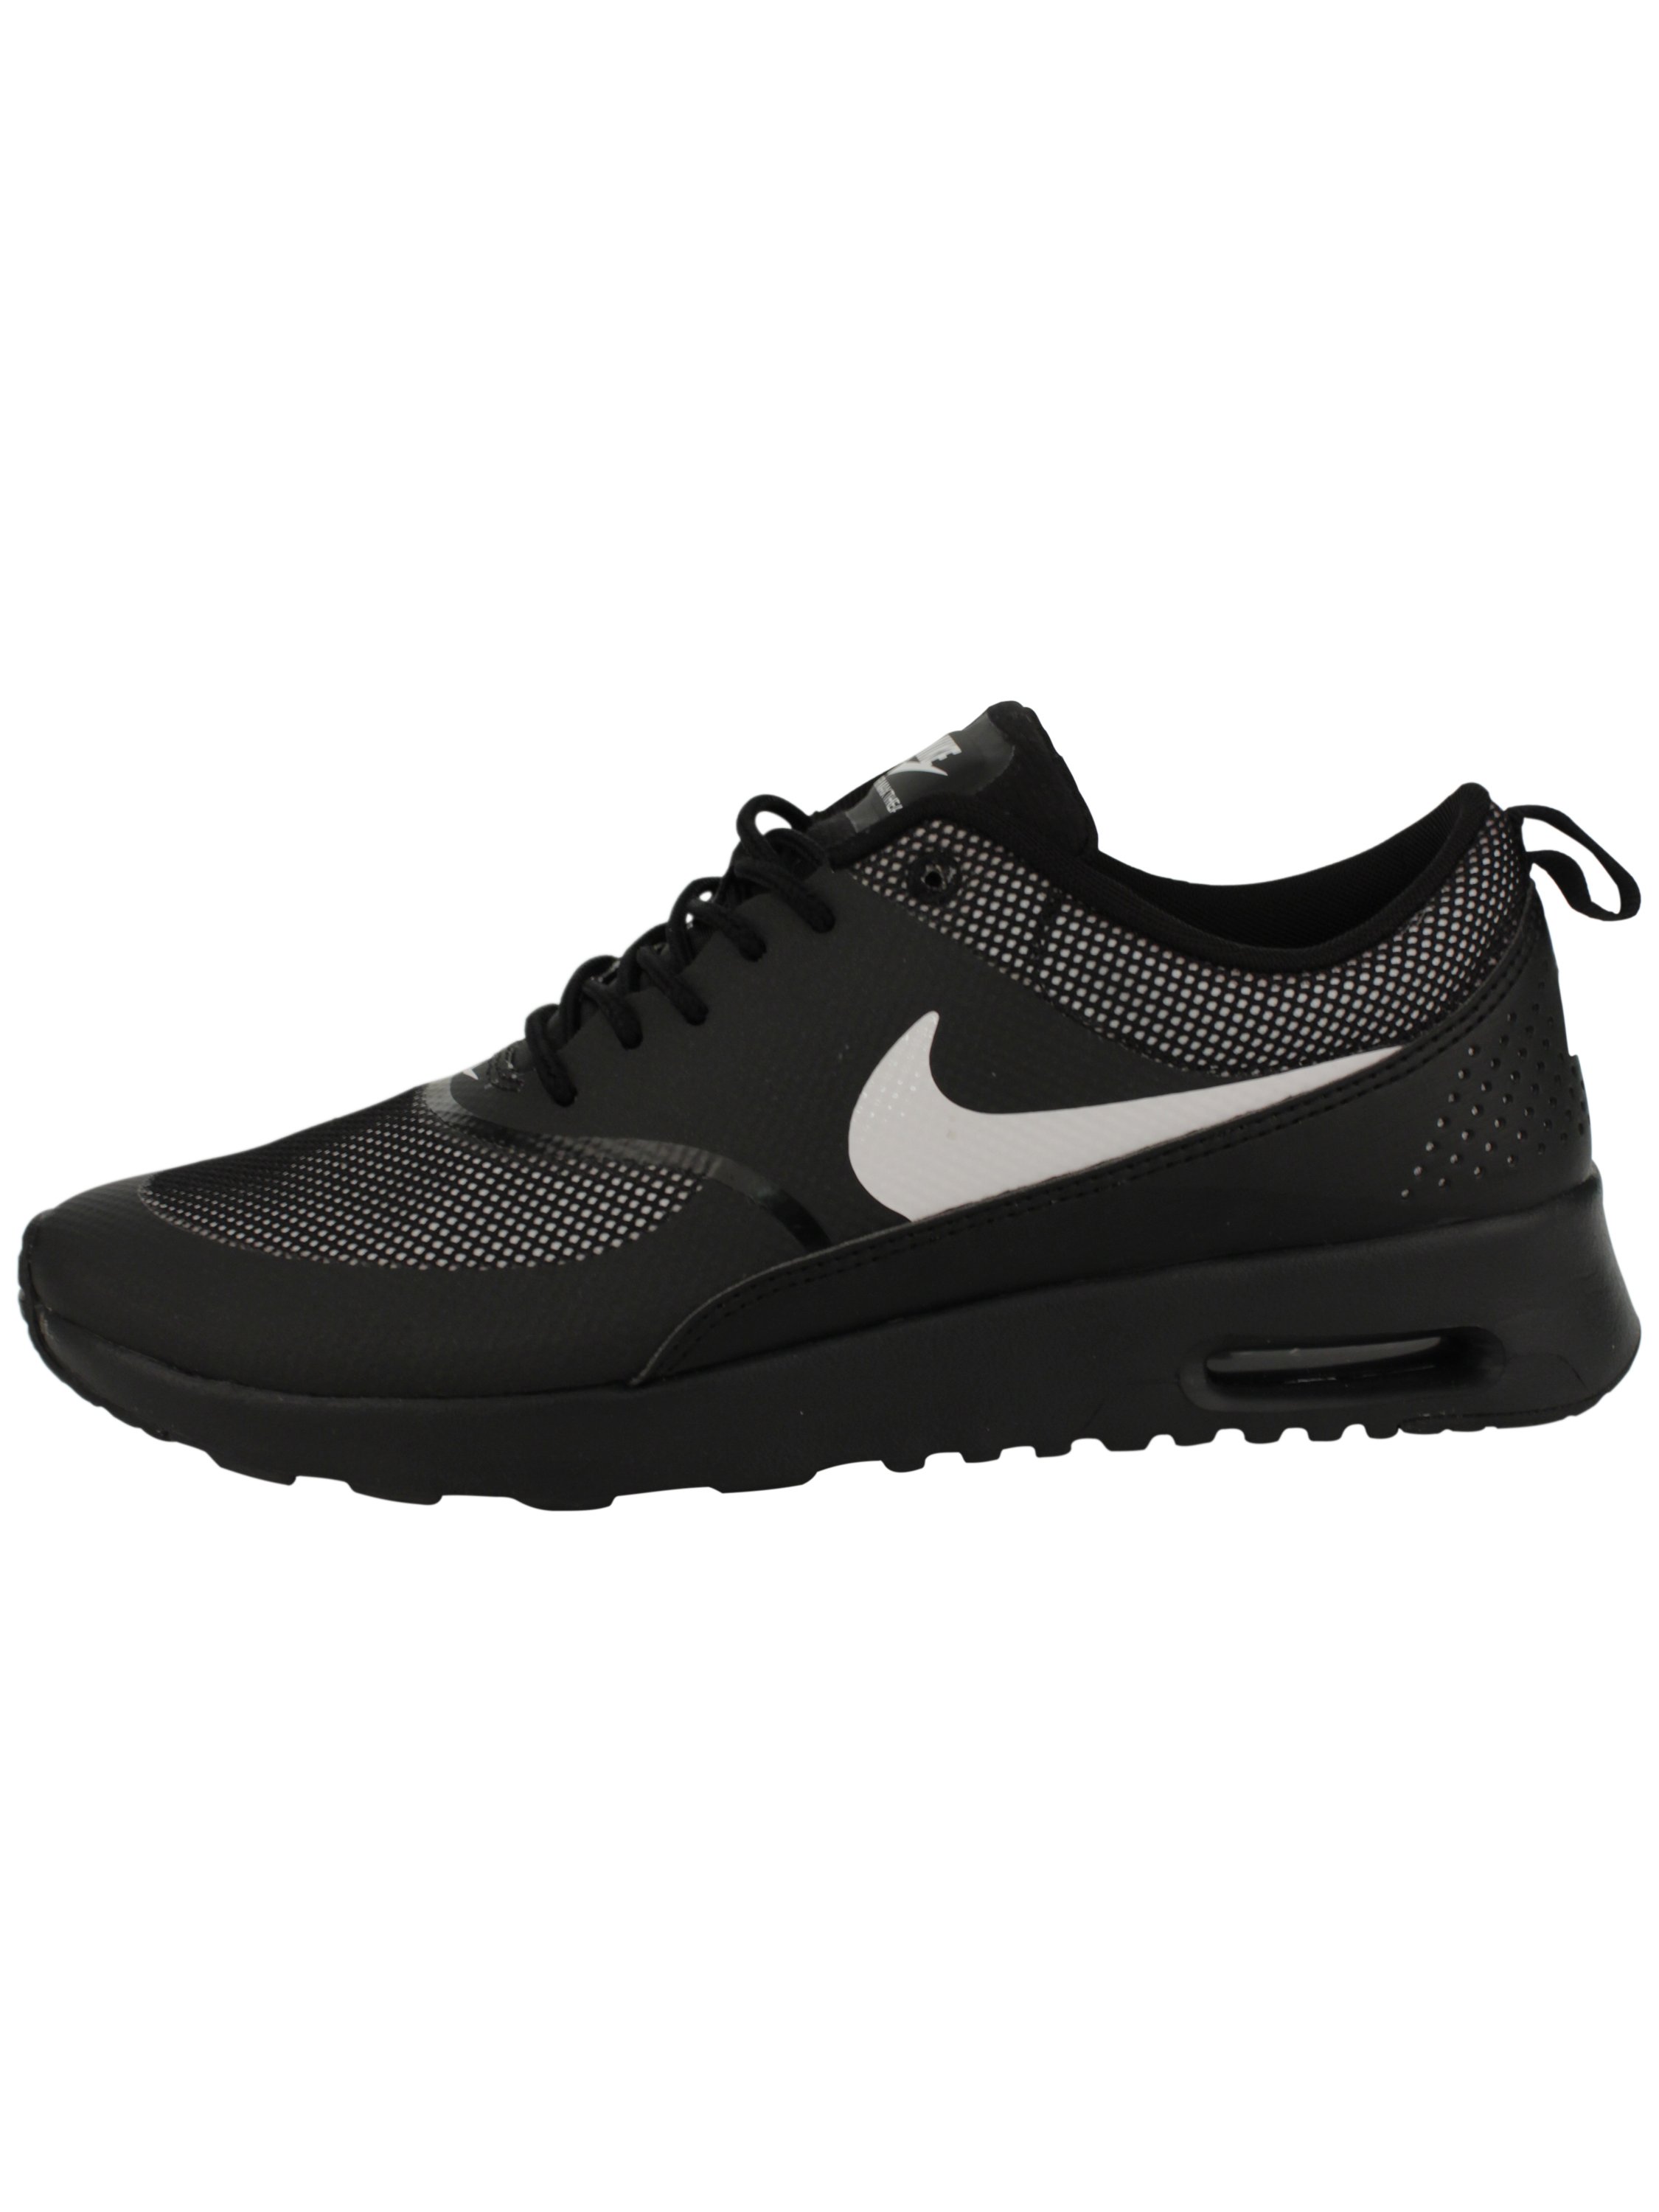 Watt computer kwaliteit Koop Nike 'Air Max Thea' Shoes - Black